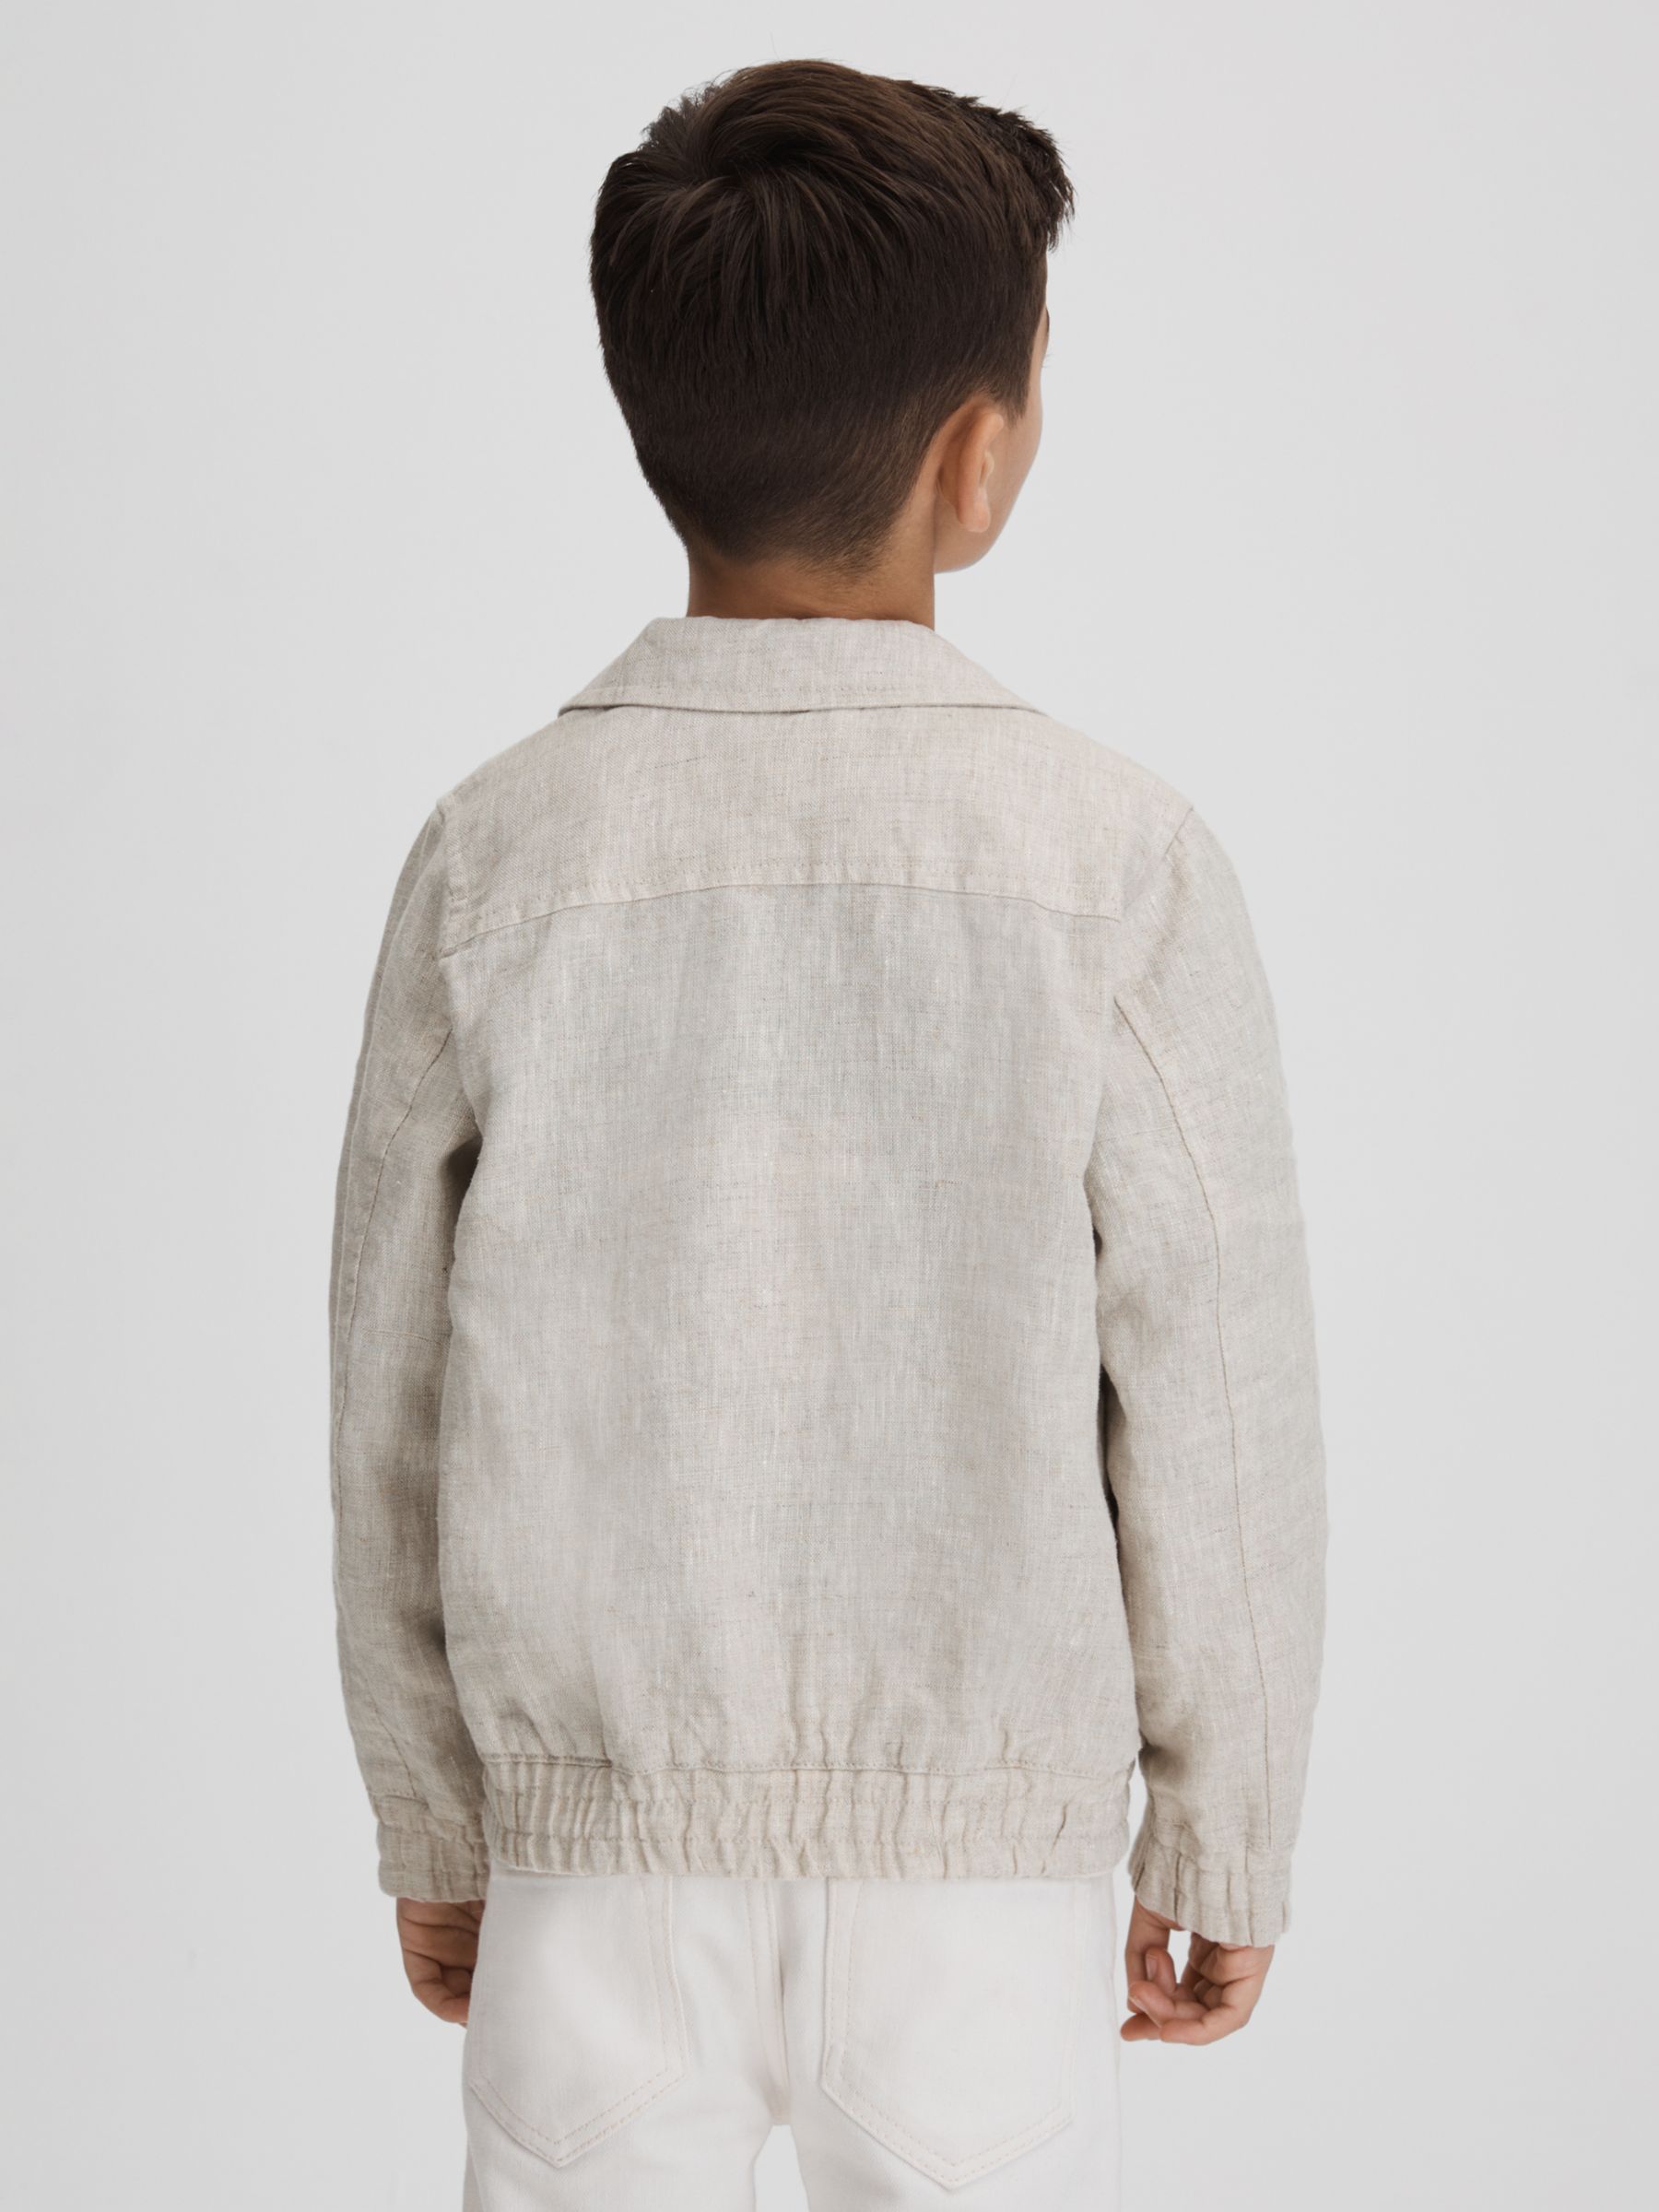 Reiss Kids' Cadiz Linen Bomber Jacket, Stone, 3-4 years